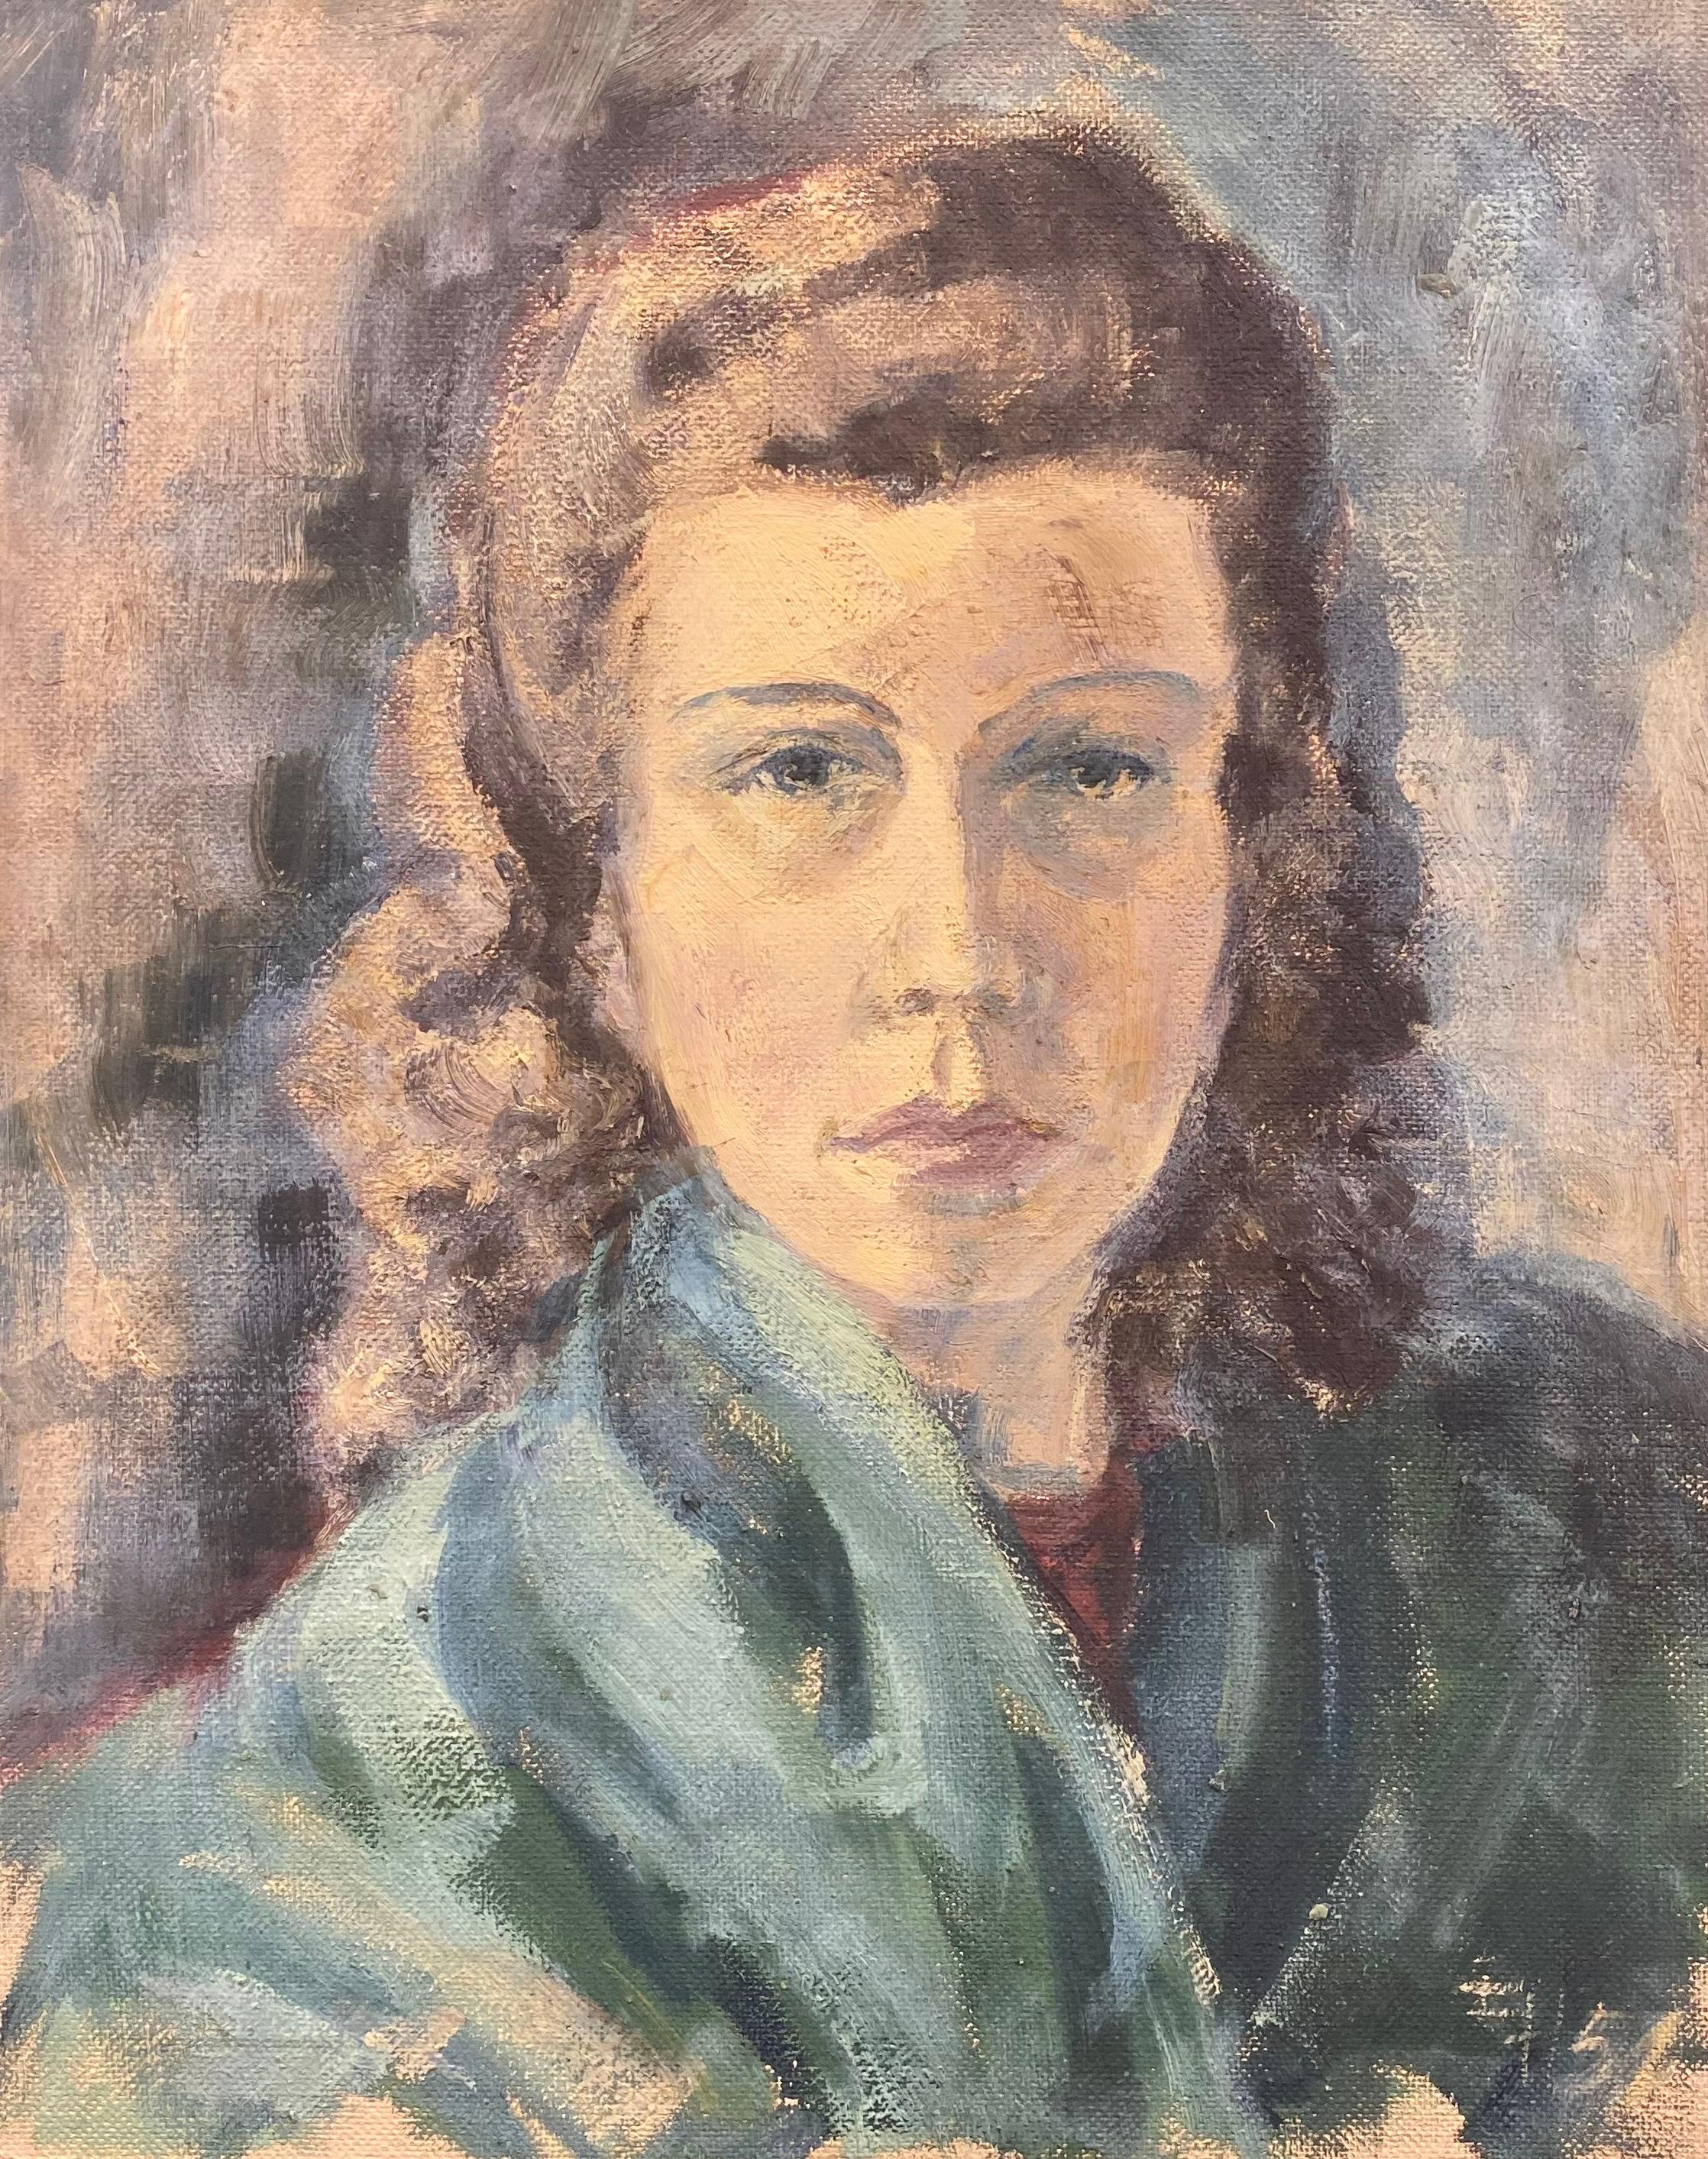 Elisabeth Hahn Portrait Painting - 20th Century German Modernist Oil Painting Portrait of a Woman